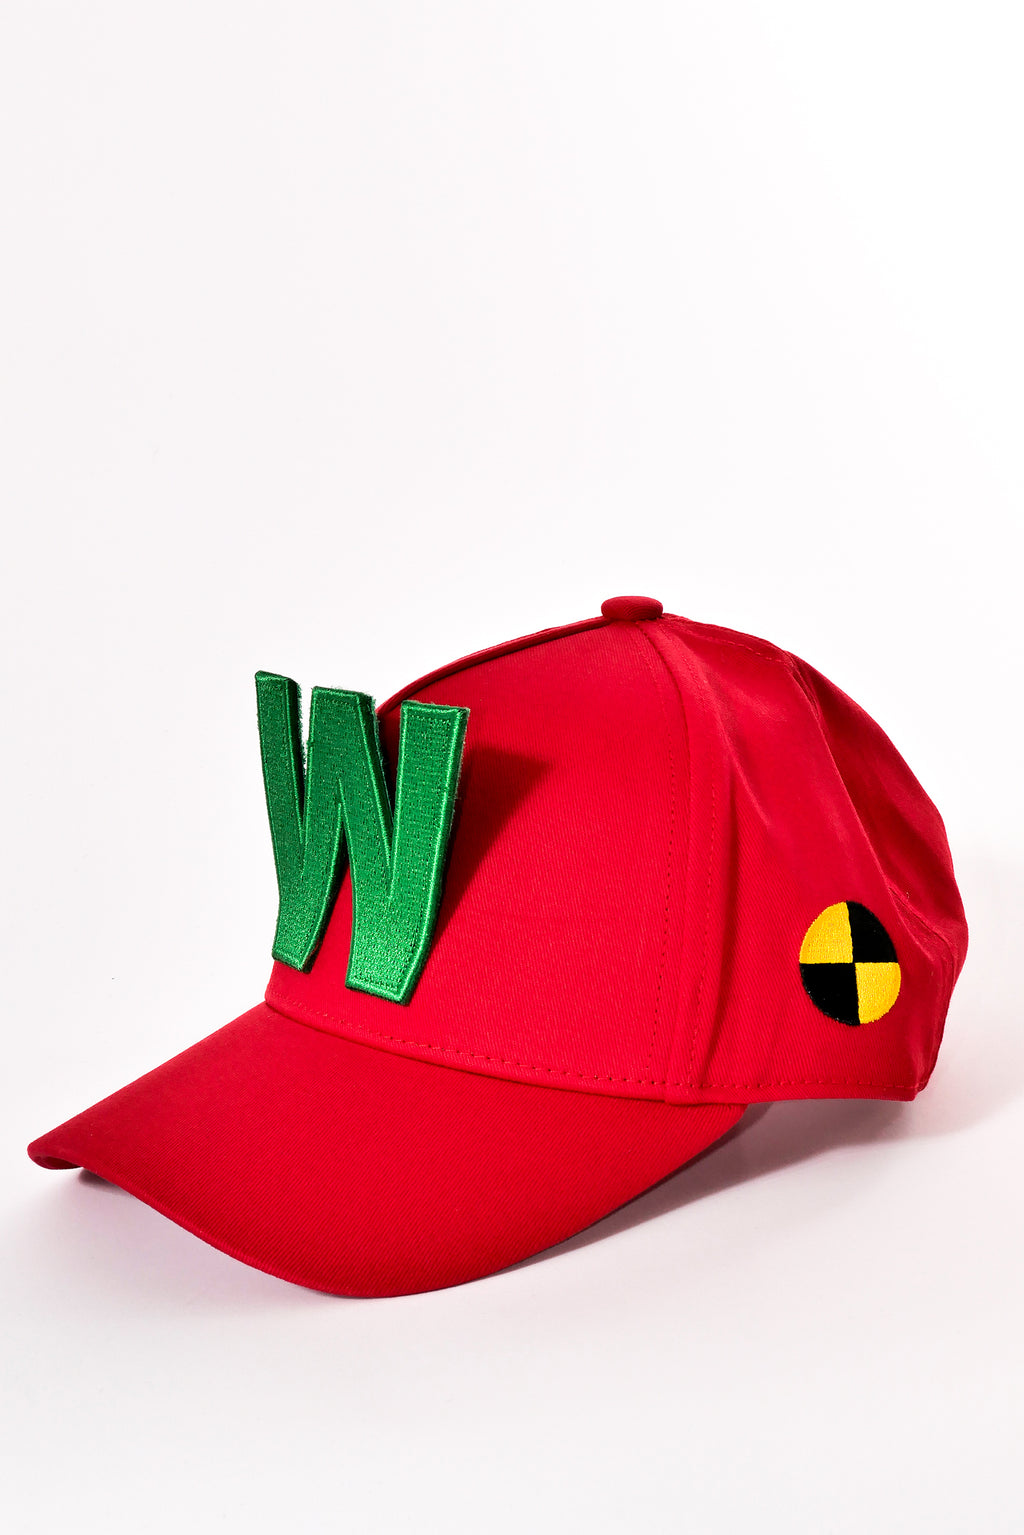 W-Cap - Red